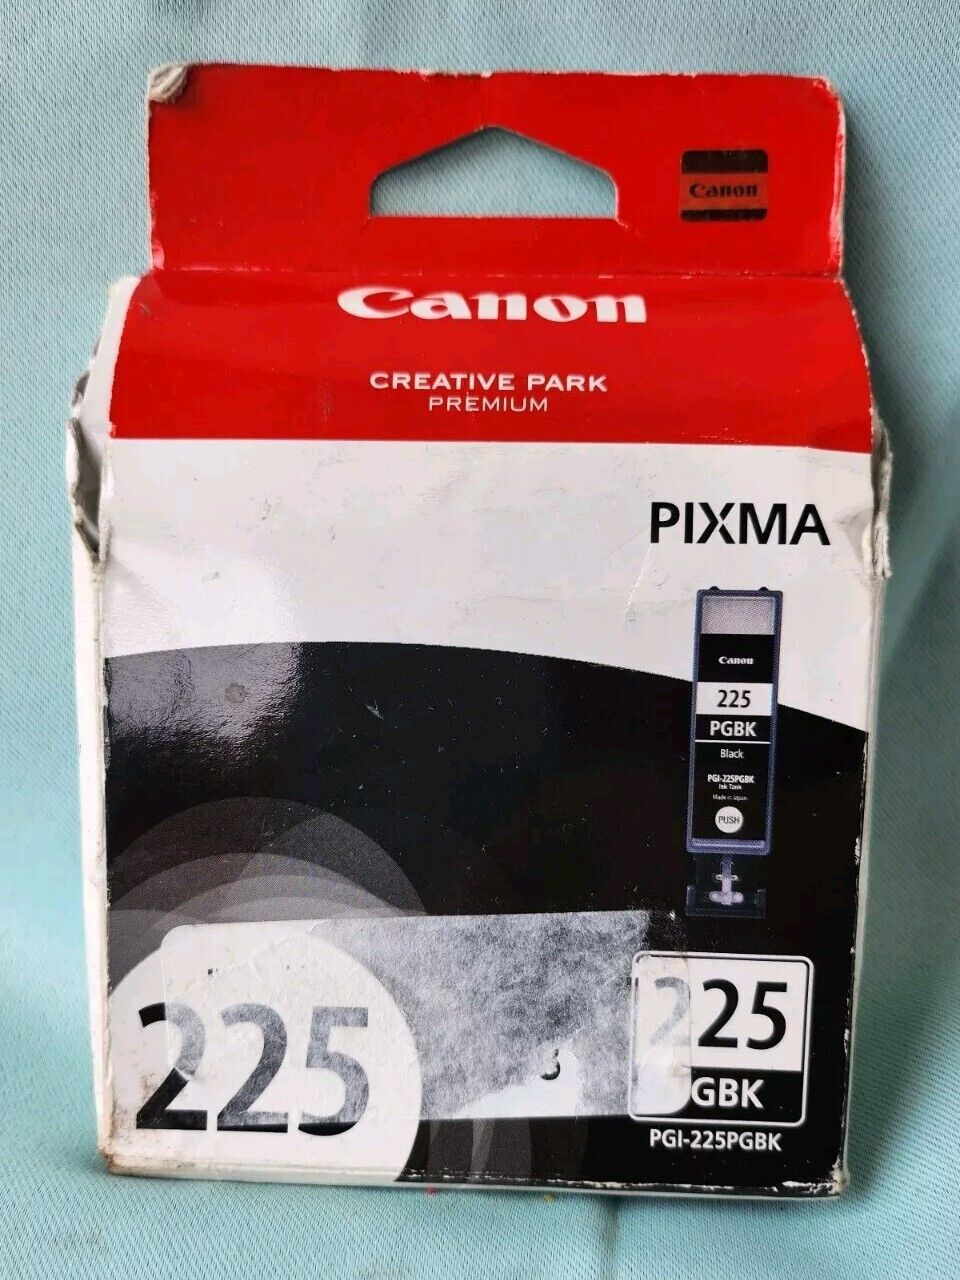 NEW Genuine Canon Pixma 225 PGBK PGI-225PGBK Black Ink Cartridge